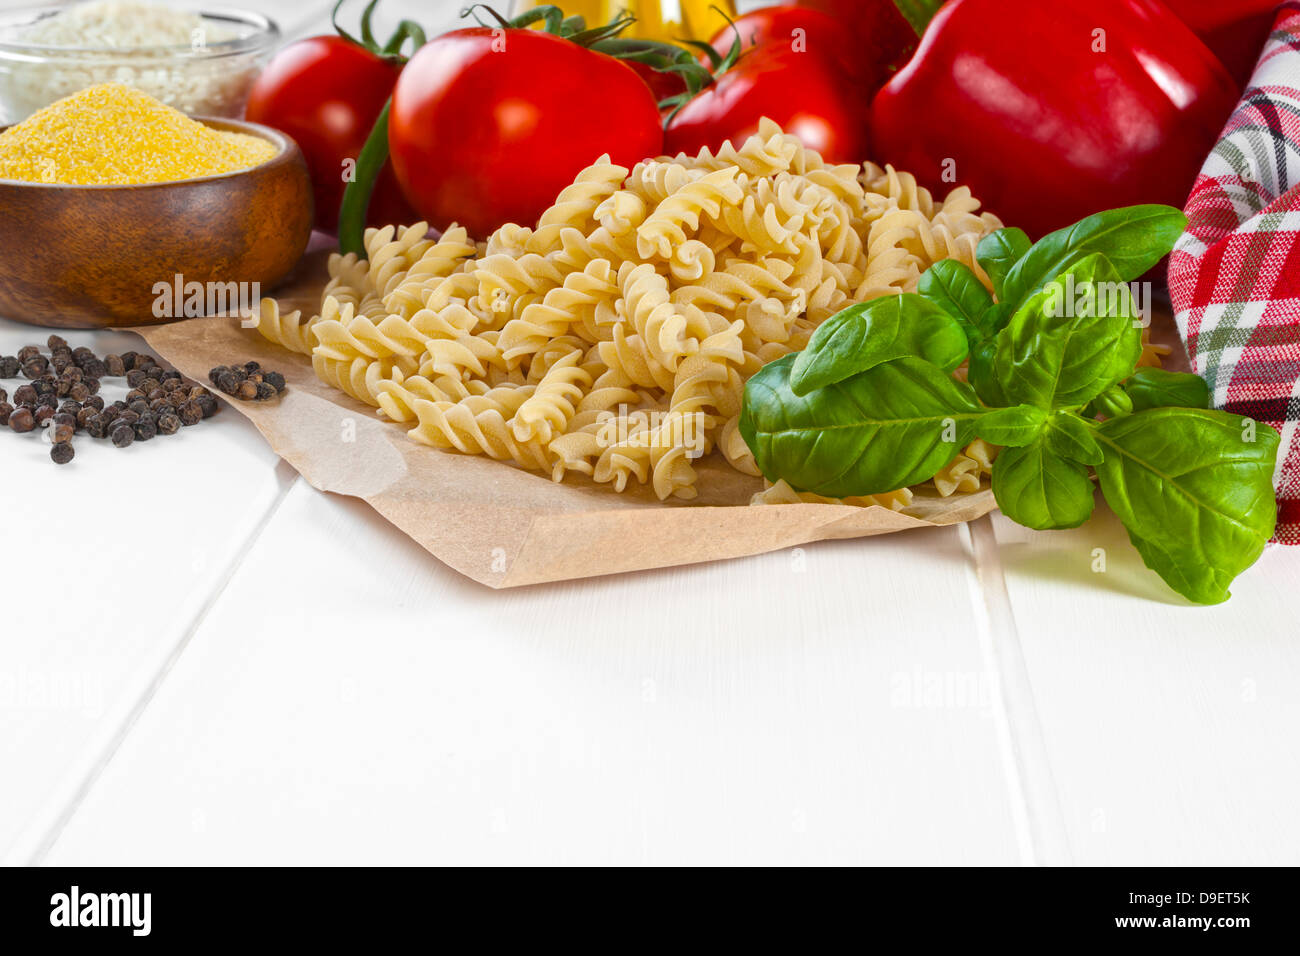 L'Italien Ingrédients alimentaires - ingrédients pour la cuisine italienne, le basilic, die bronze pâtes fusilli. poivron rouge, les tomates, l'huile d'olive... Banque D'Images